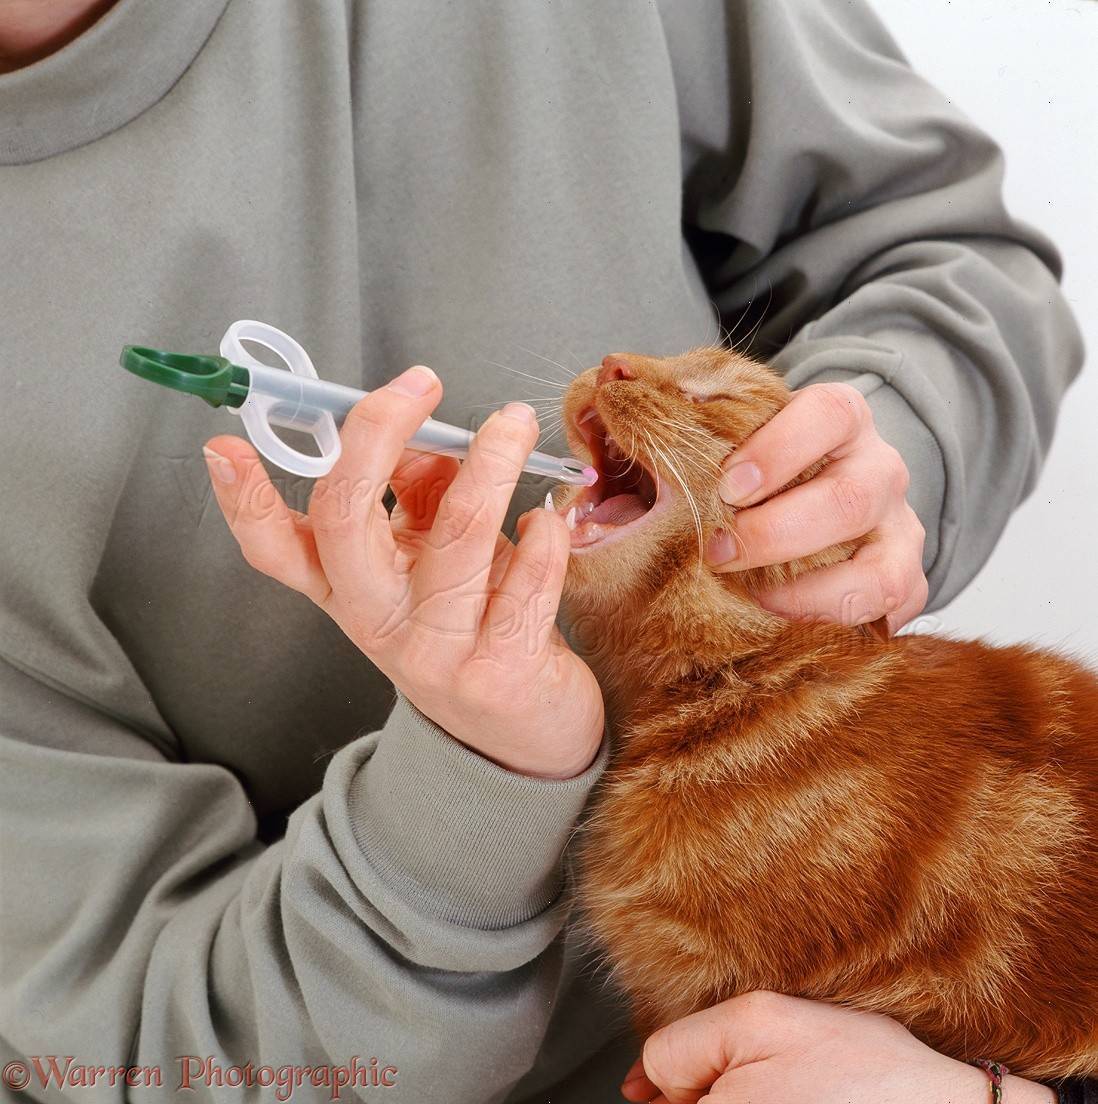 Как правильно давать таблетки кошке | hill's